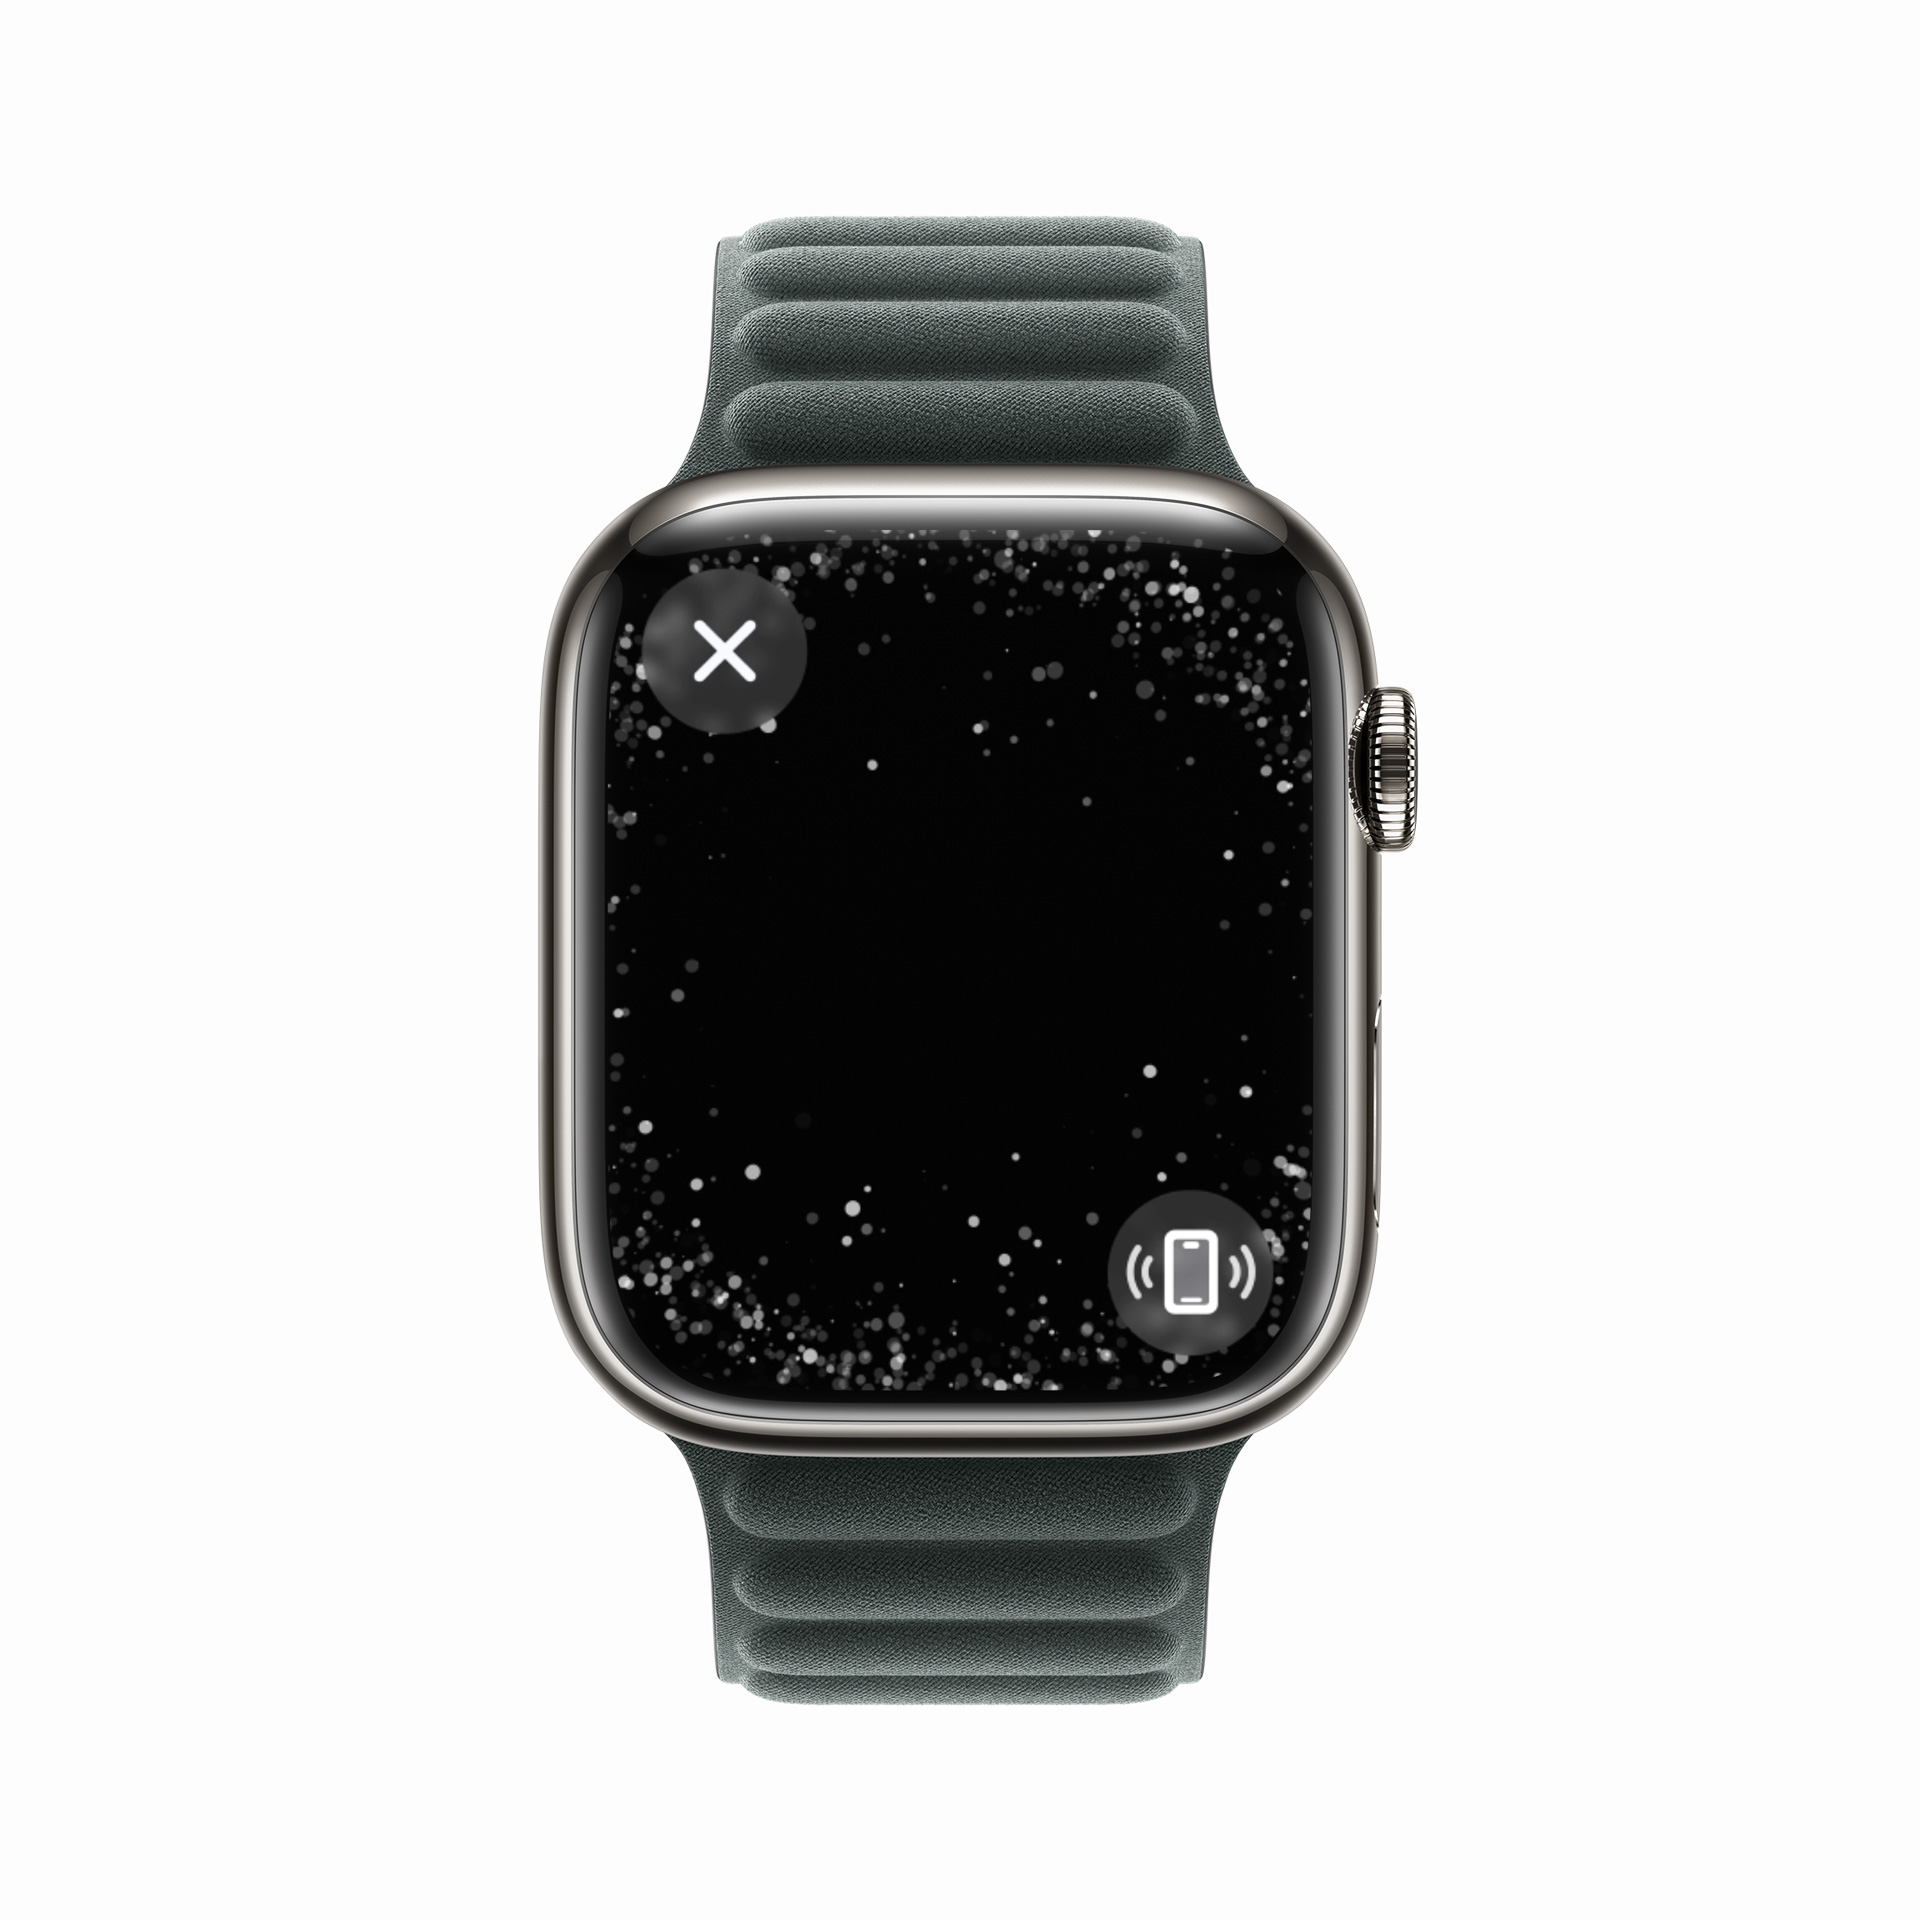 Tải mặt đồng hồ Apple Watch đẹp nhất, miễn phí | TIKI